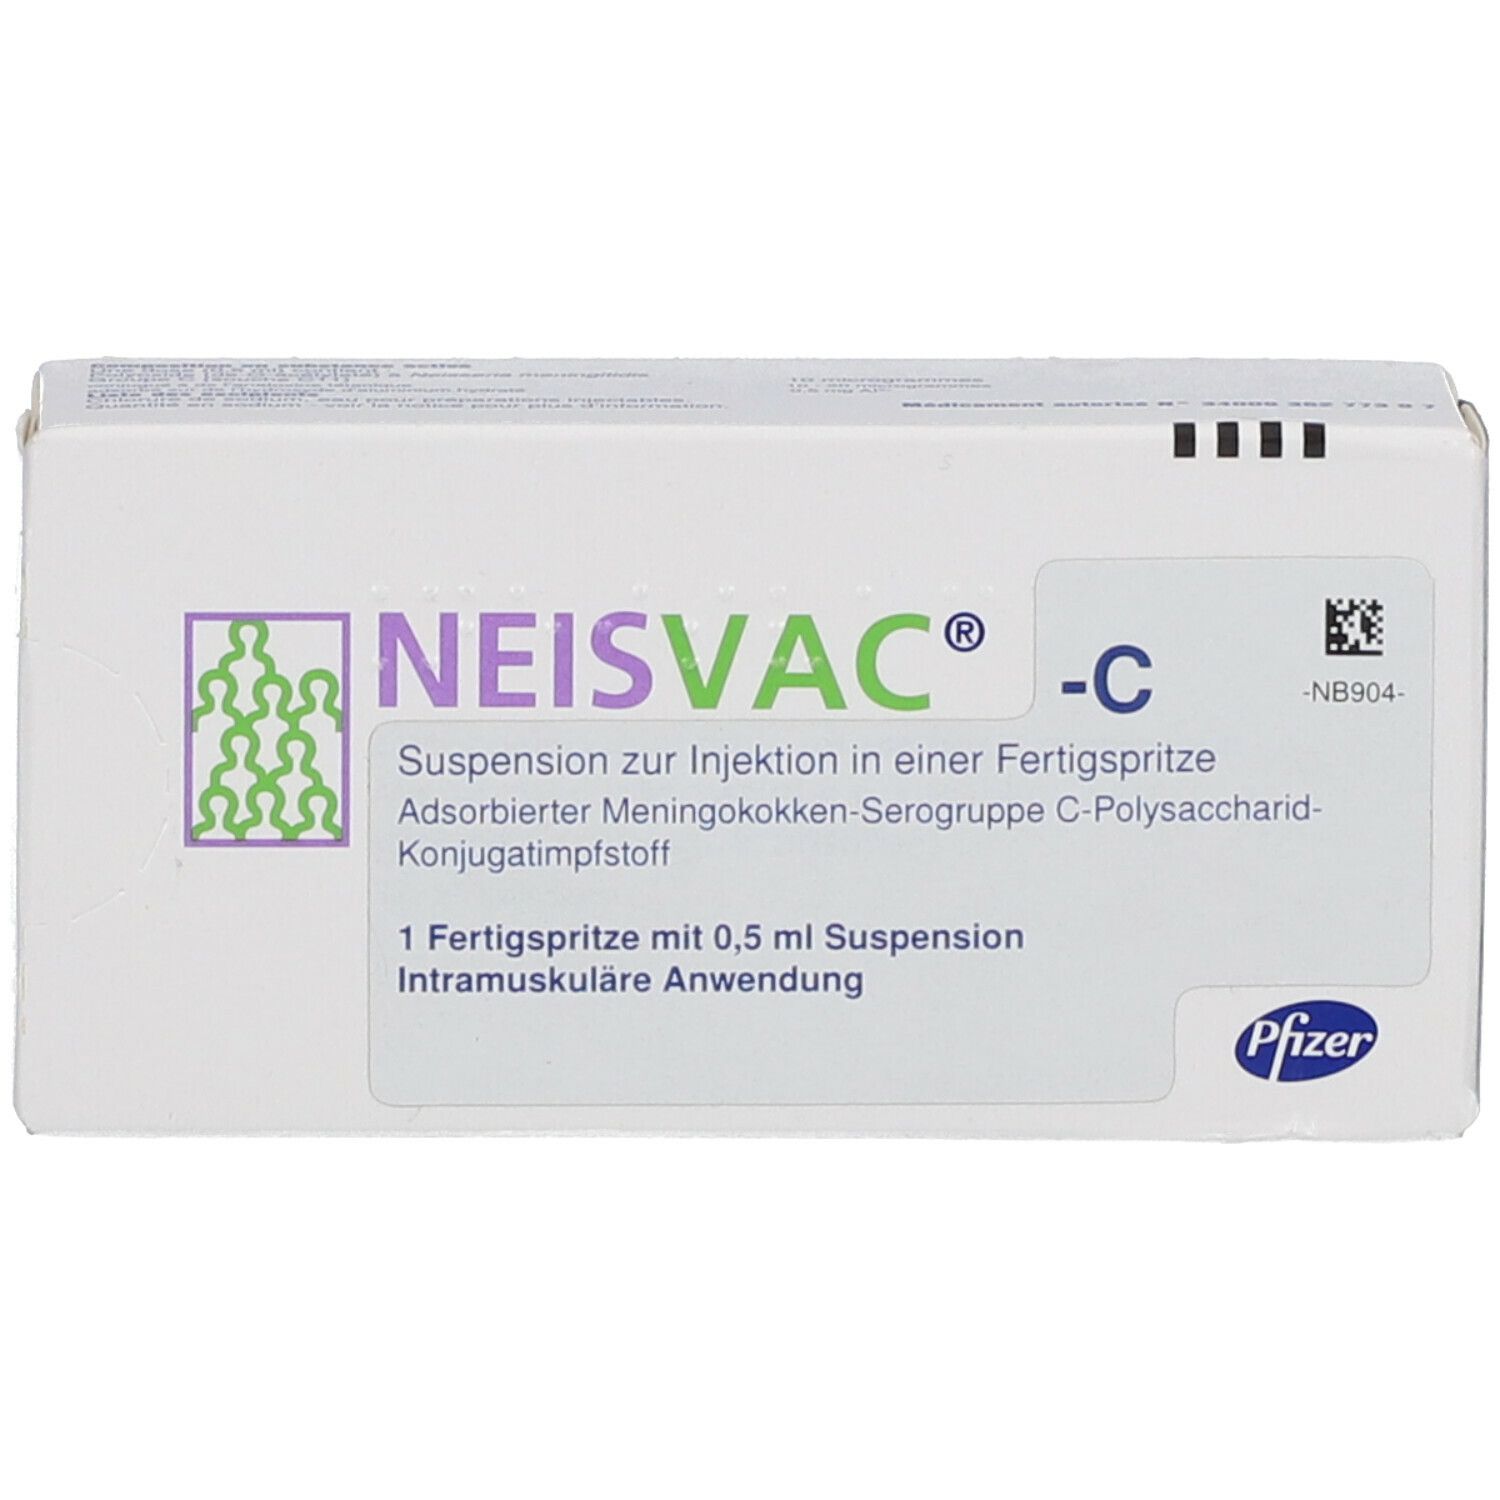 Neisvac-C